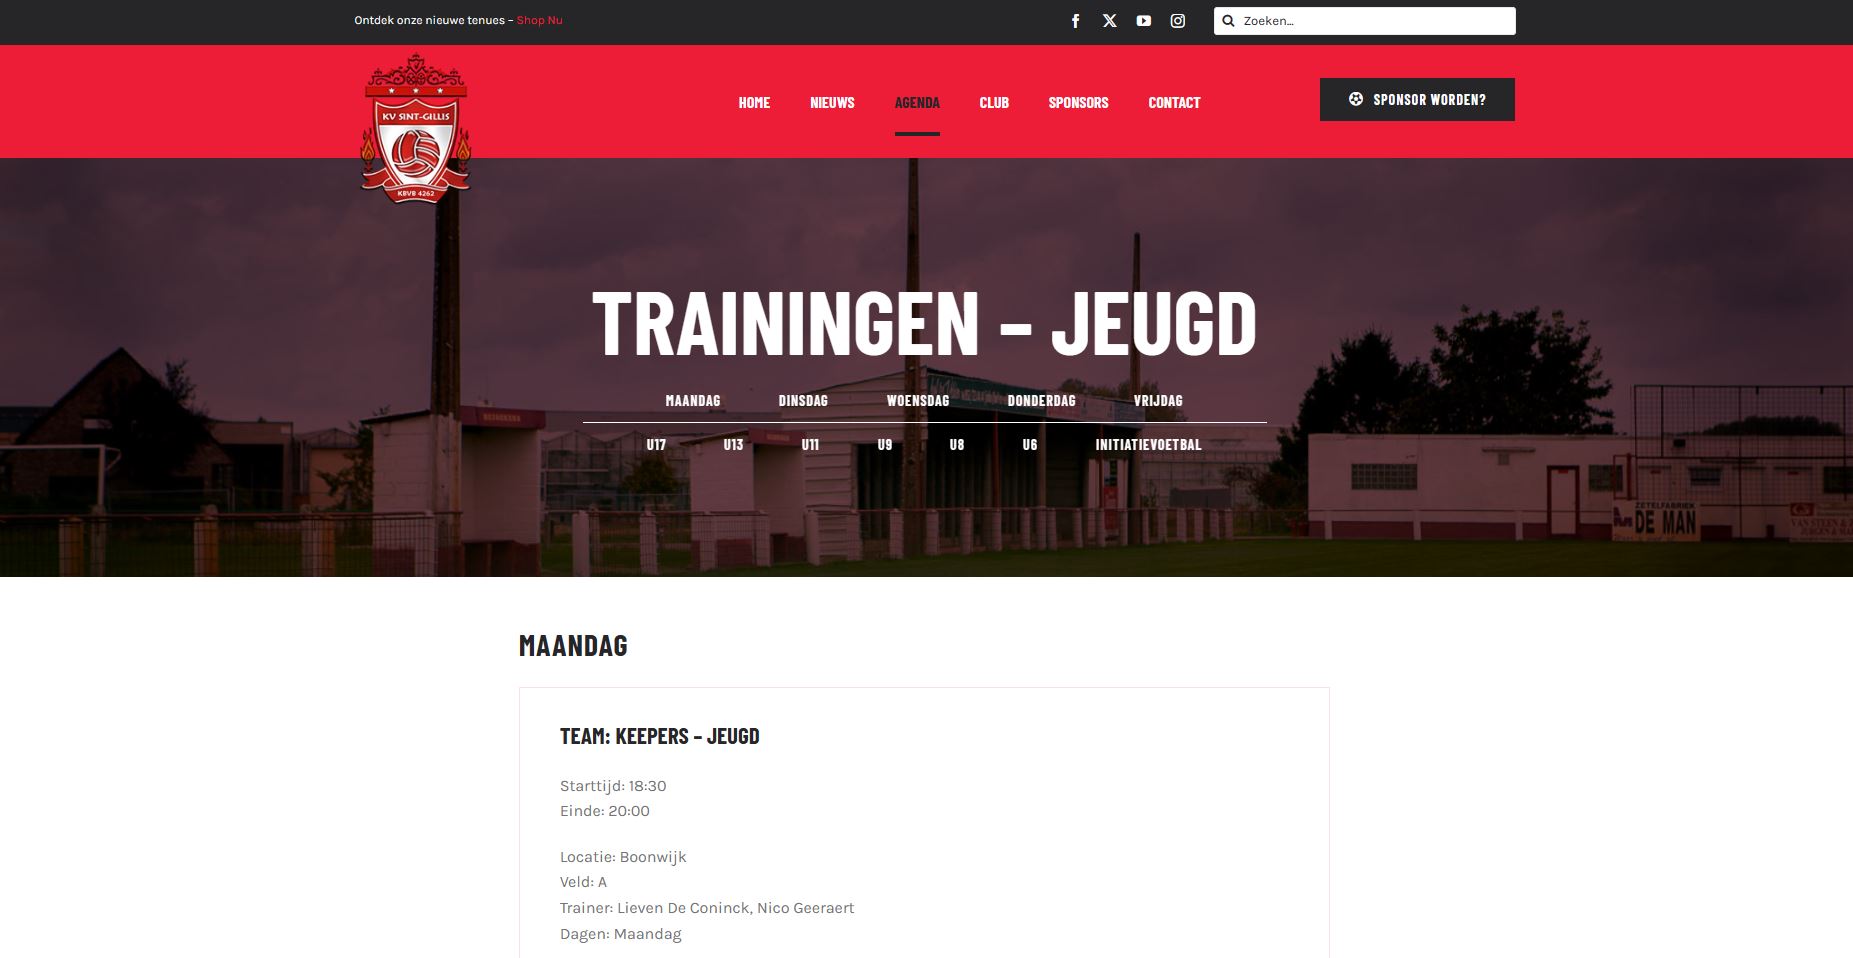 Website pagina met de trainingen op per jeugdploeg